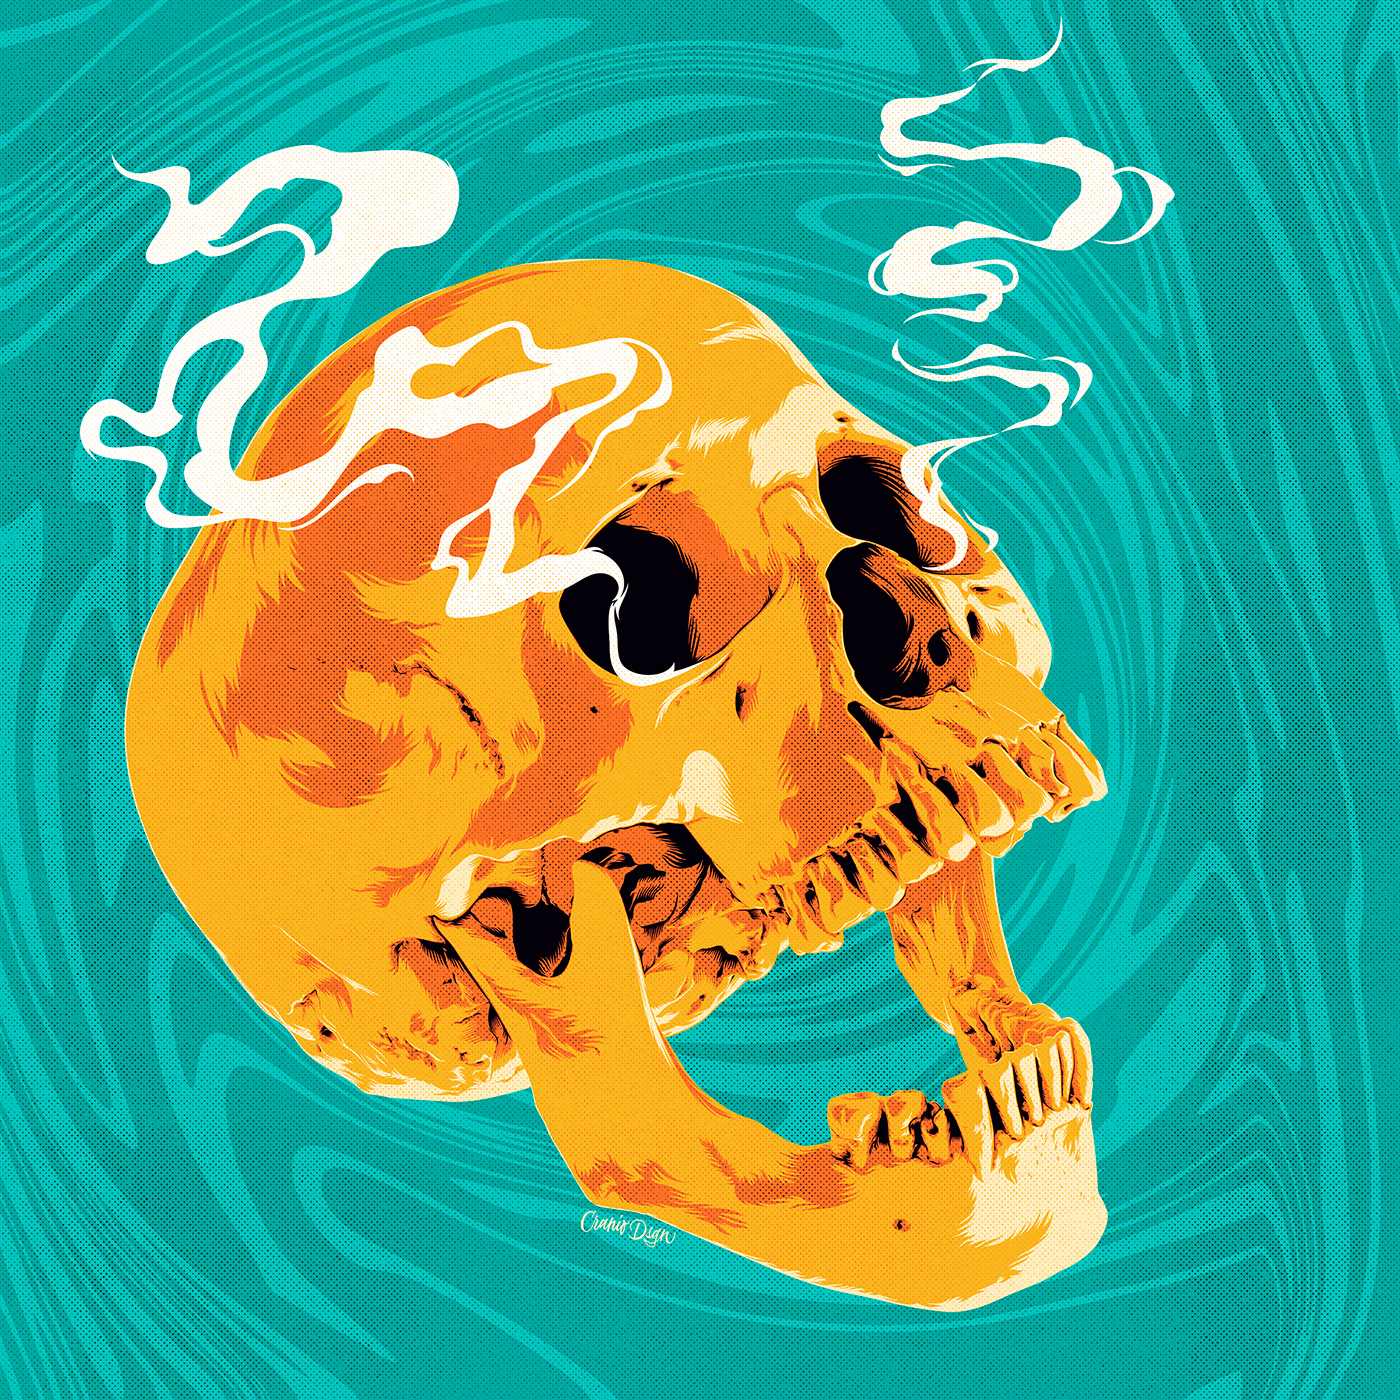 adobe illustrator fish human face Insomnia skull tiger japan skater